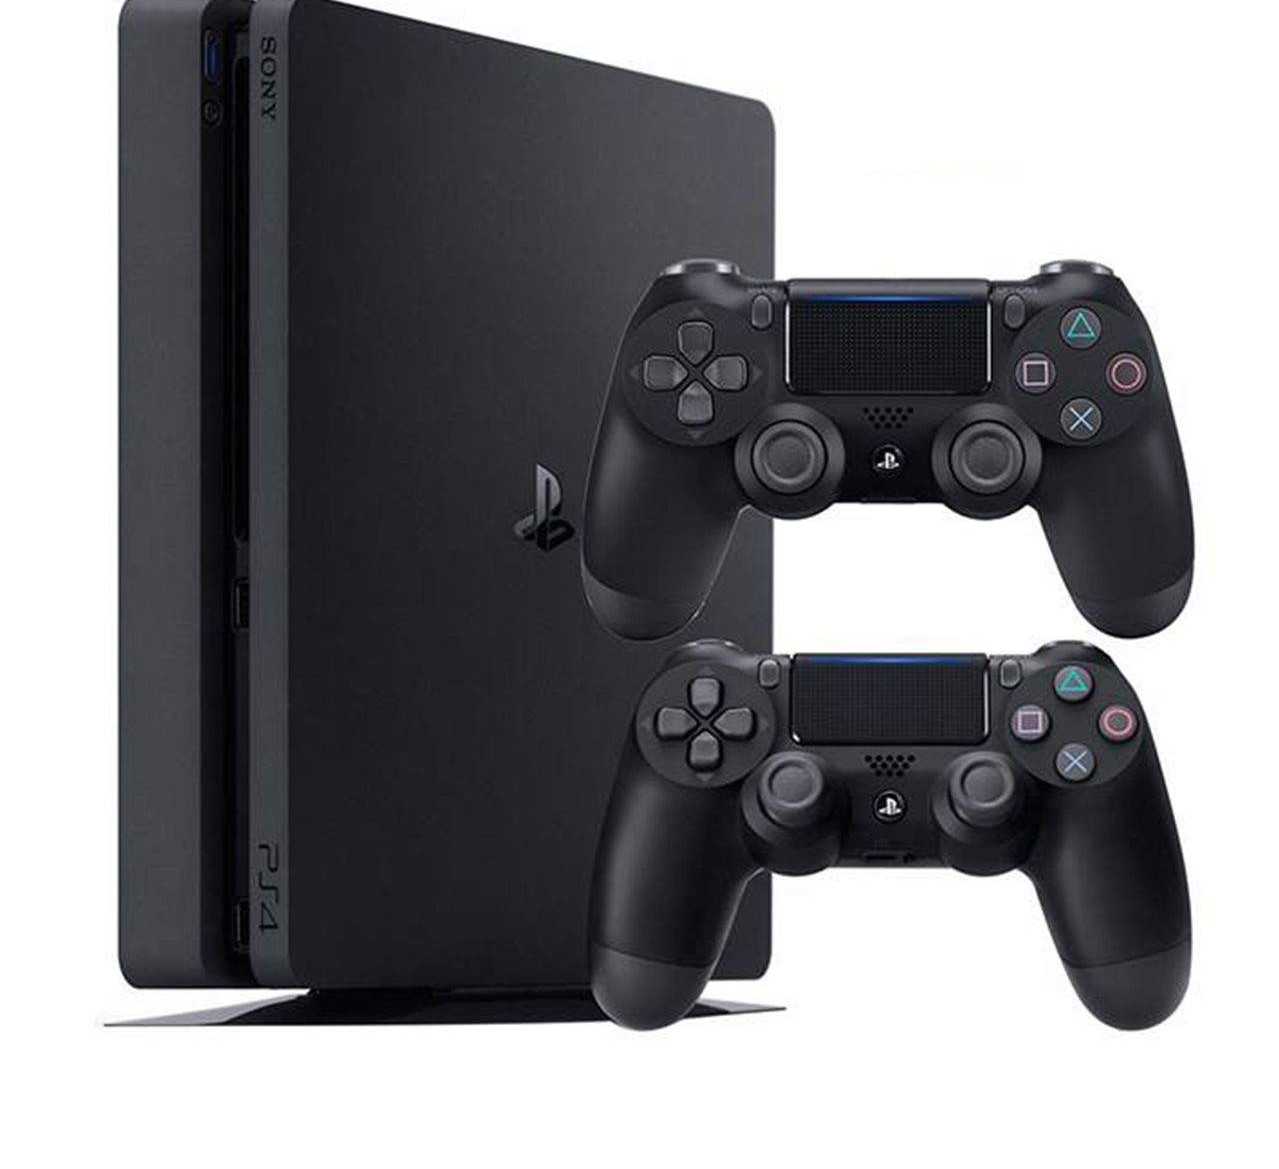 مجموعه کنسول بازی سونی Sony مدل Playstation 4 Slim کد Region 1 CUH-2215B ظرفیت 1 ترابایت